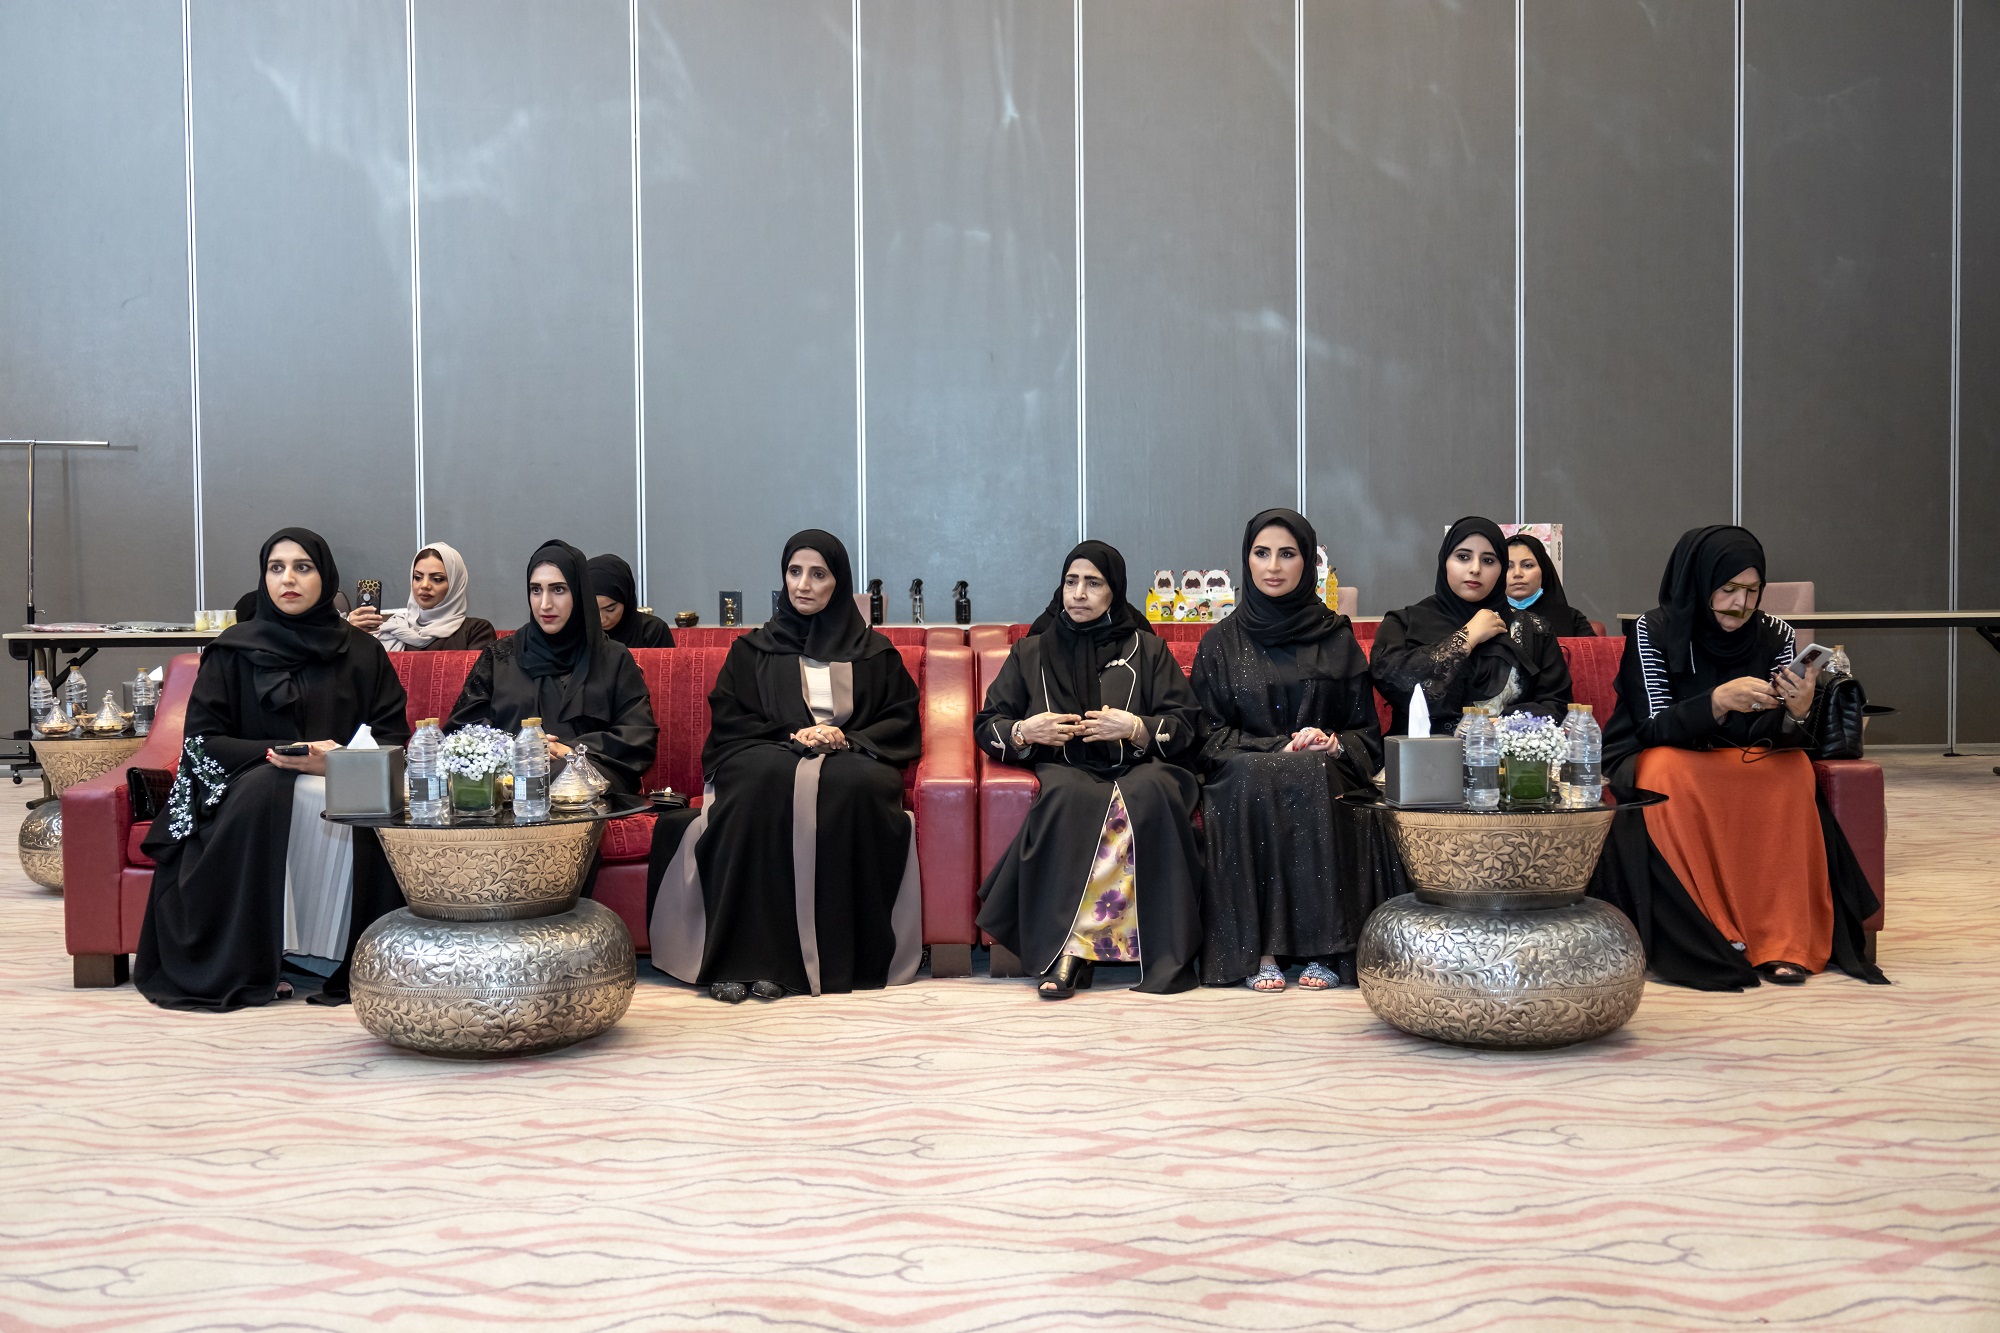 "عيادة الأعمال" مبادرة جديدة يطلقها مجلس سيدات أعمال عجمان خلال فعاليات ملتقى "المرأة نبض الوطن" تحت شعار جودة الحياة